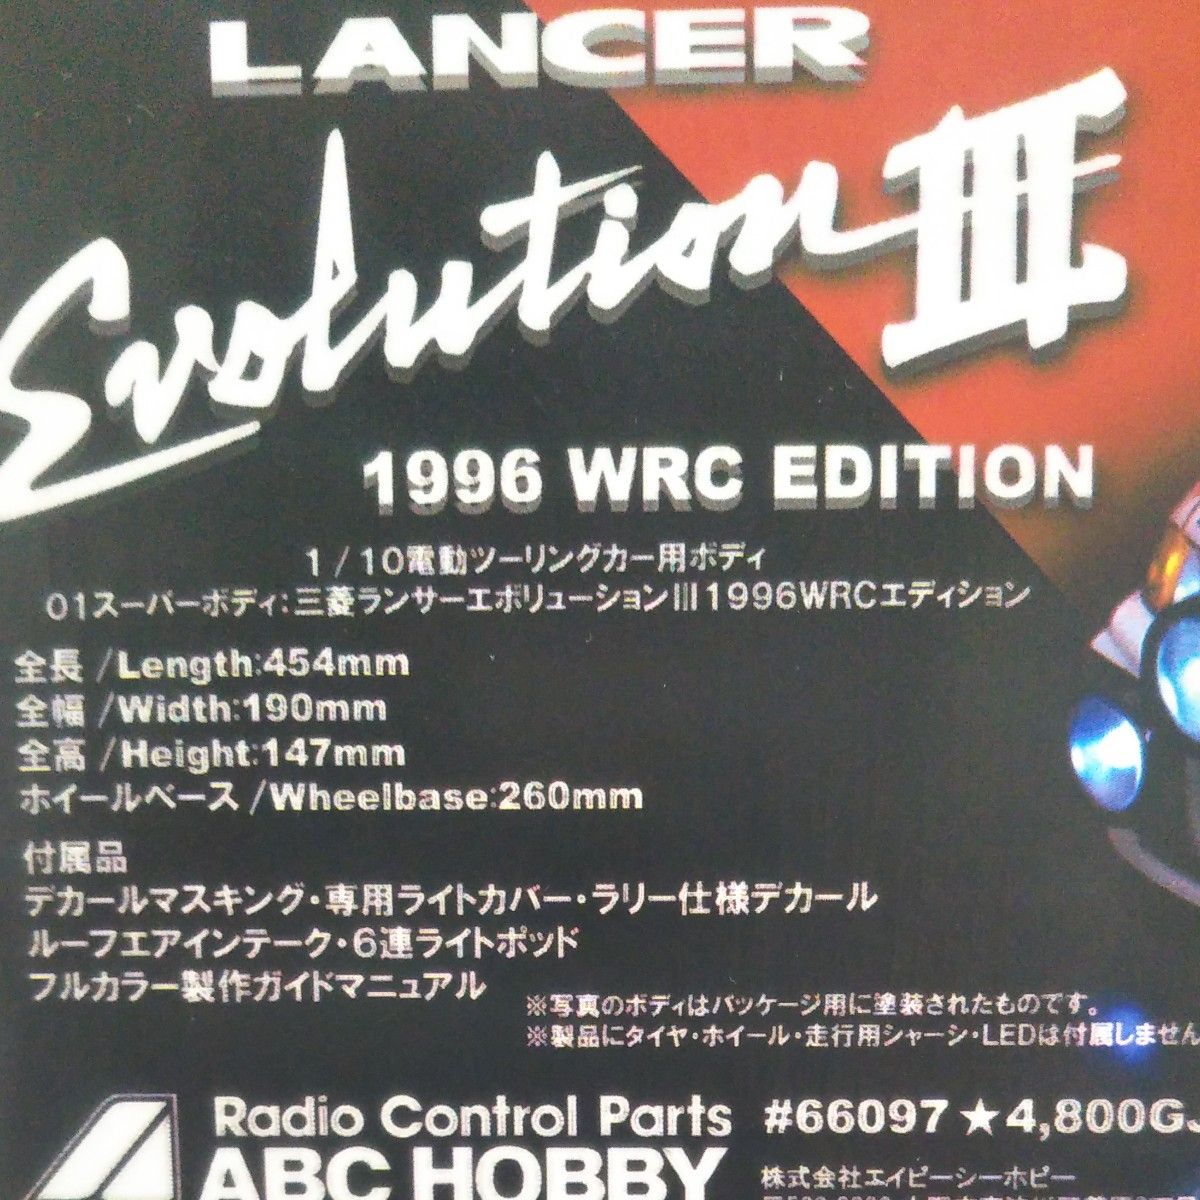 ABCホビー ランサーエボリューショ３ WRC 1996 EDITION 1/10RCカー用ボディ